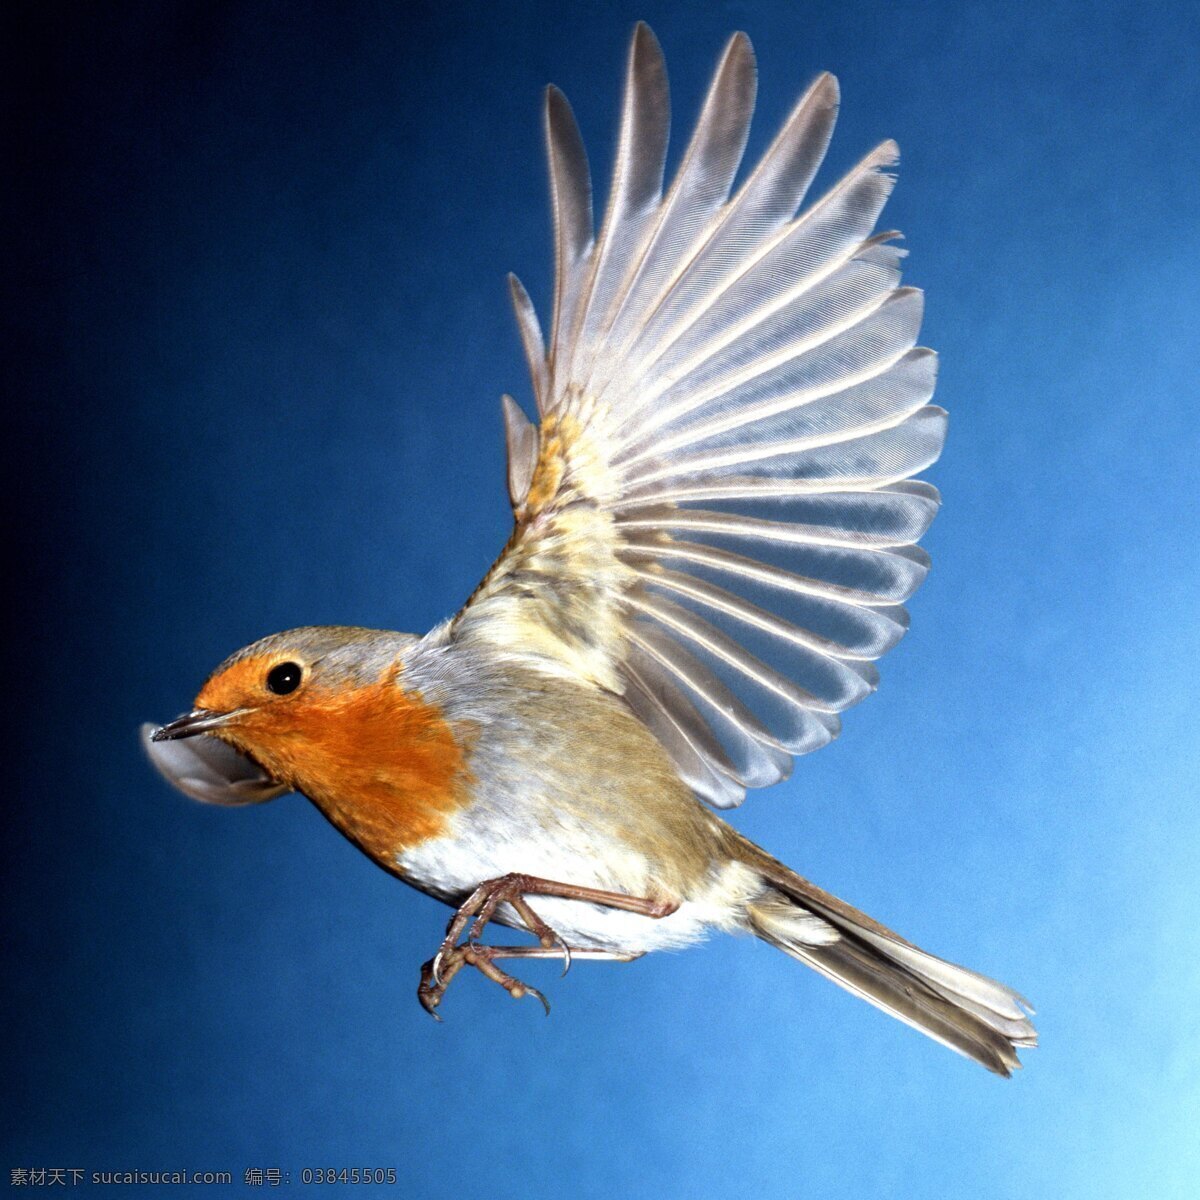 飞翔 鸟 翅膀 飞翔的鸟 美丽 鸟类 摄影图库 生物世界 psd源文件